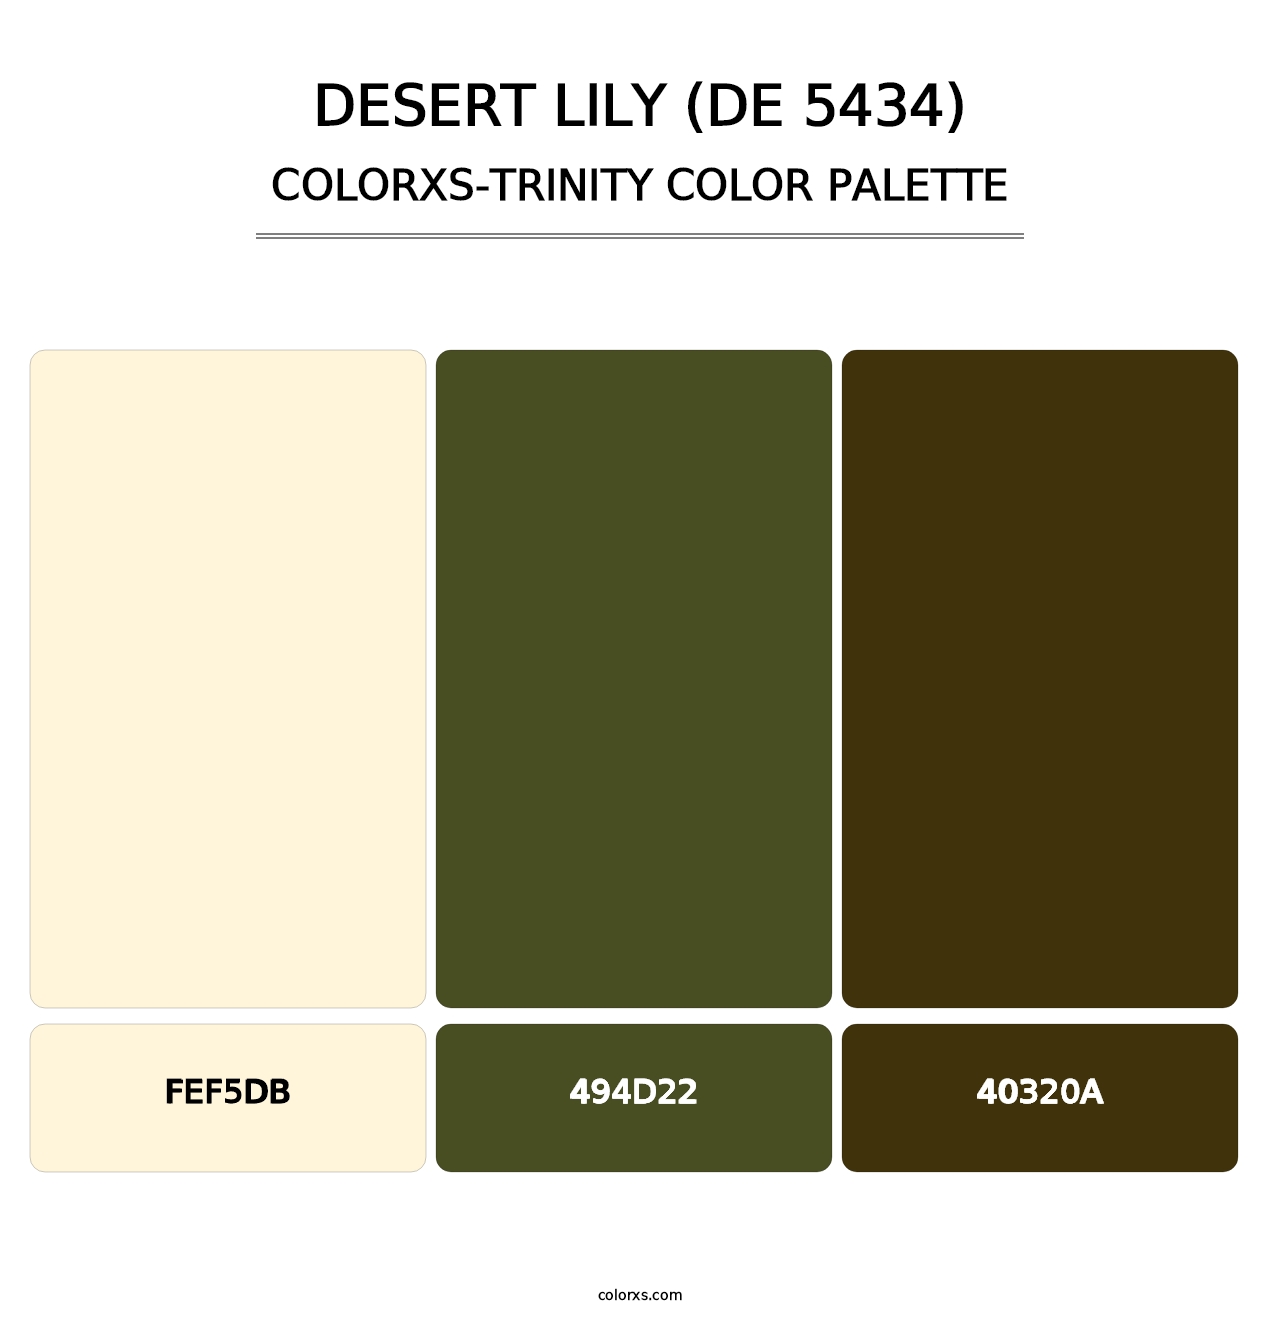 Desert Lily (DE 5434) - Colorxs Trinity Palette